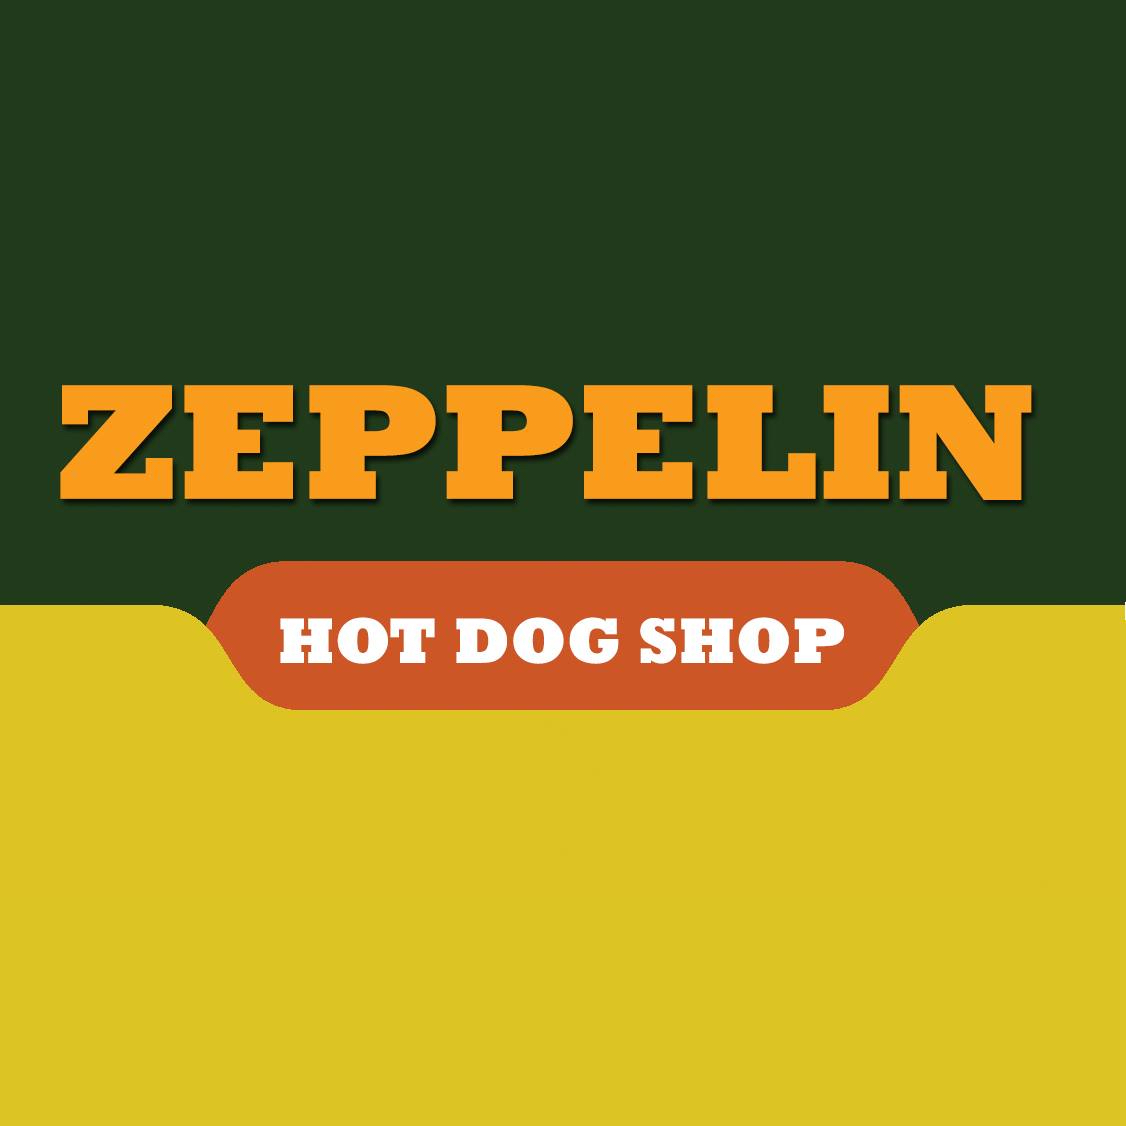 齊柏林熱狗 Zeppelin Hot Dog的特許經營香港區加盟店項目1